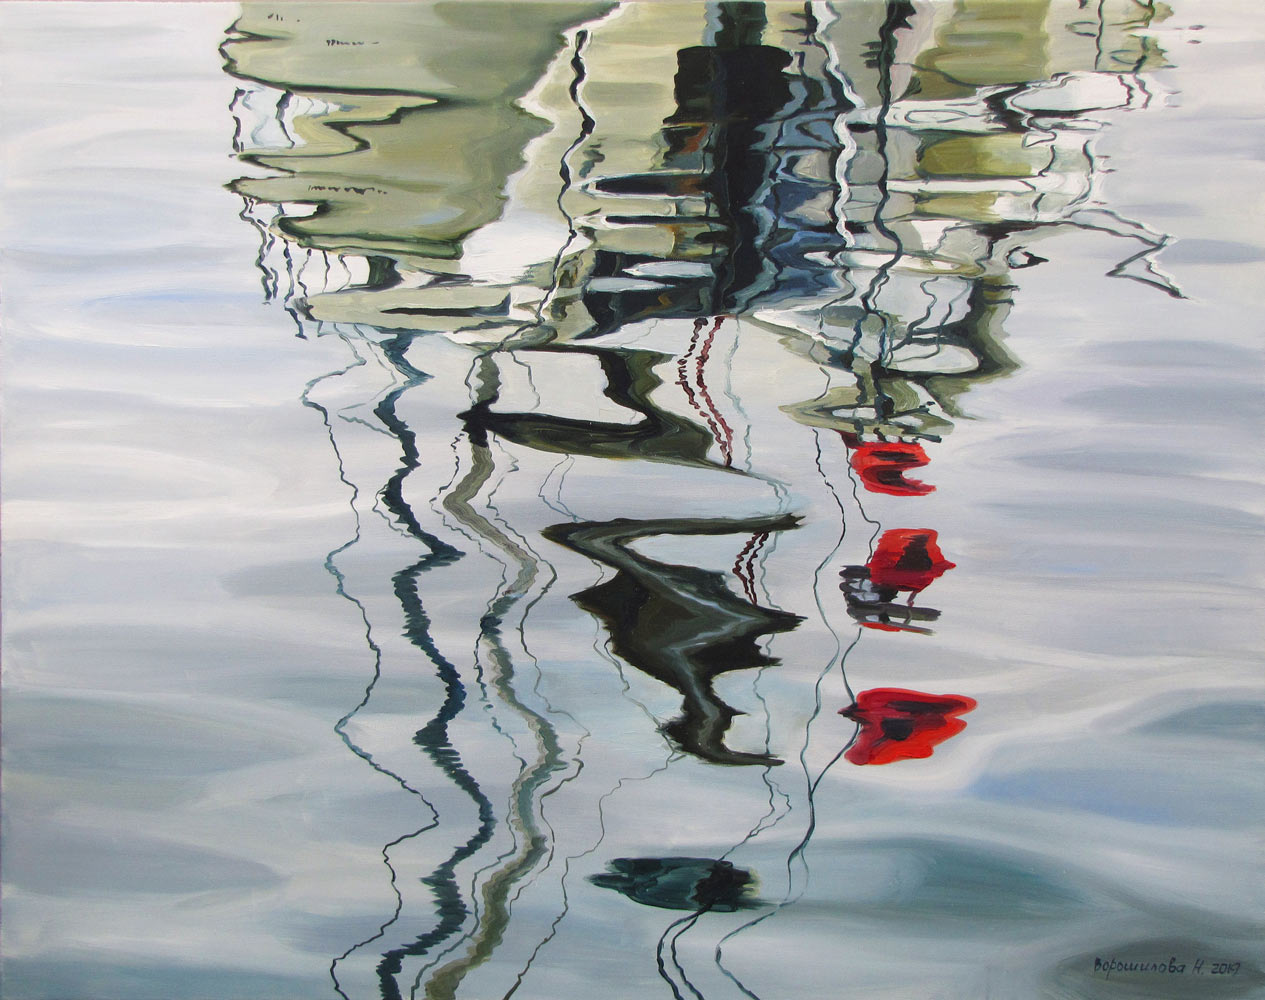 Exquisite Art Natalia Novikova Reflection. Masts